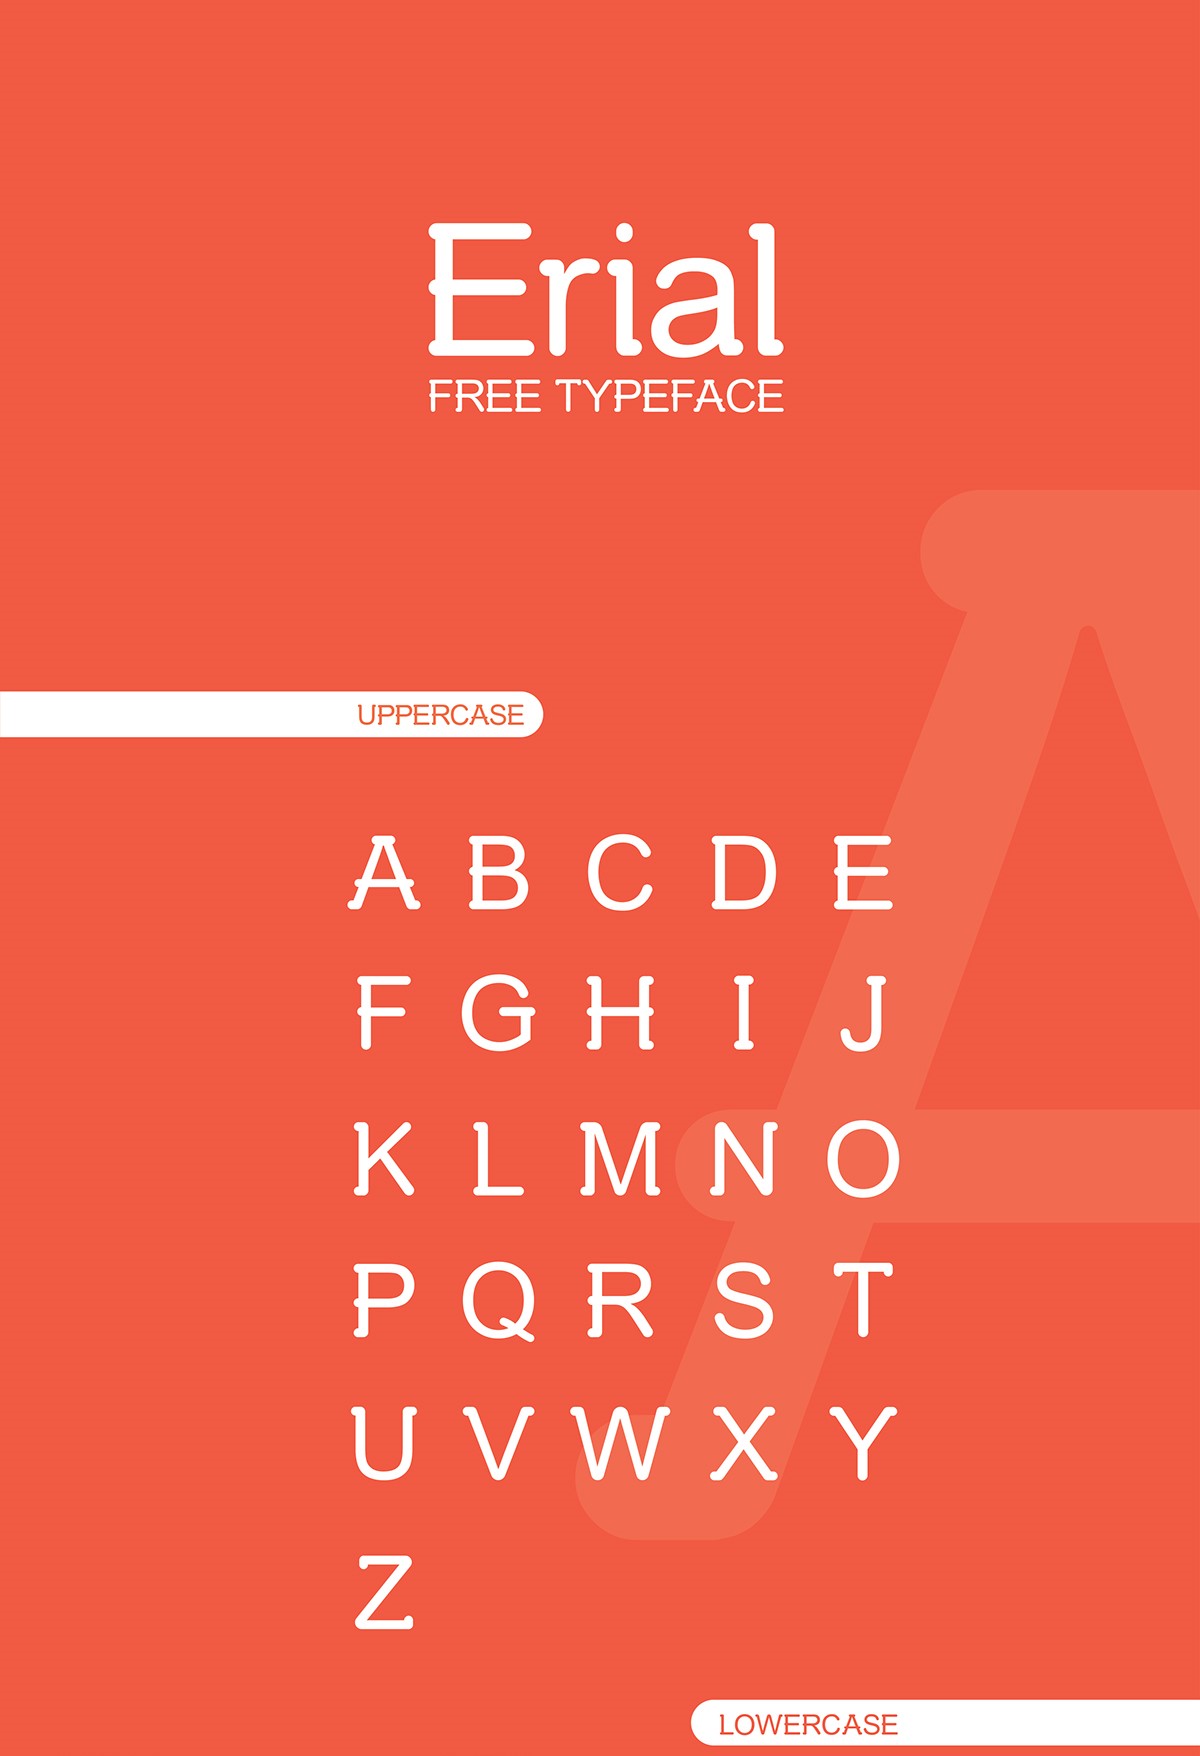 Erial-free个性游戏文字无衬线英文字体免费下载插图